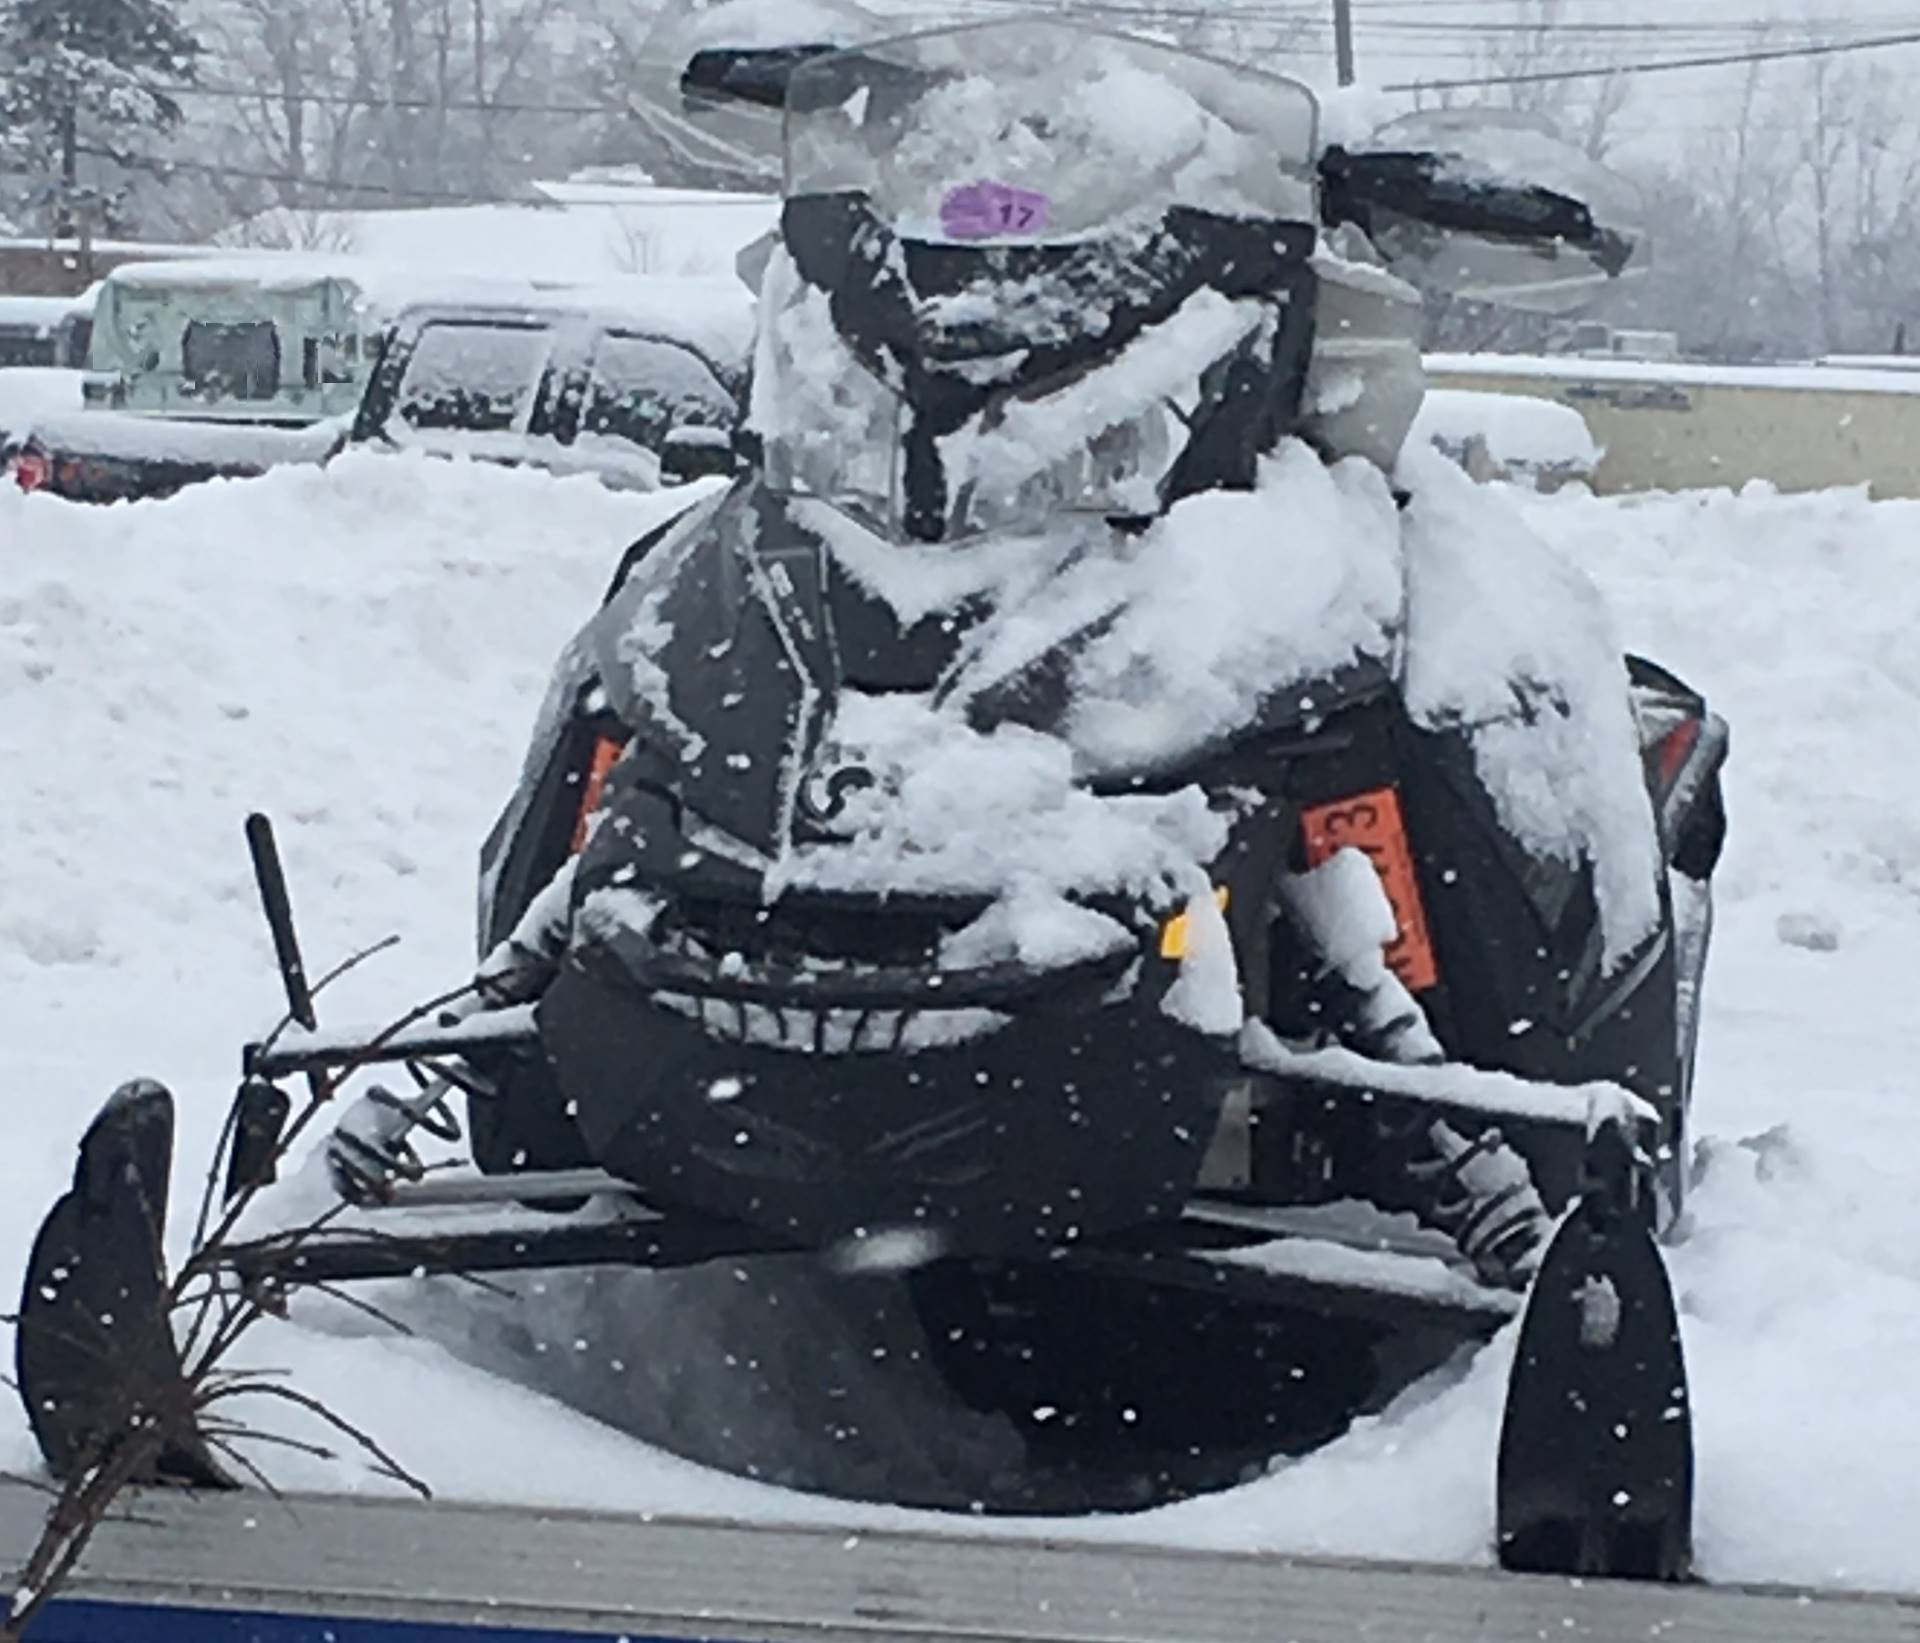 2016 Ski-Doo MXZ X 600 in Clinton Township, Michigan - Photo 1